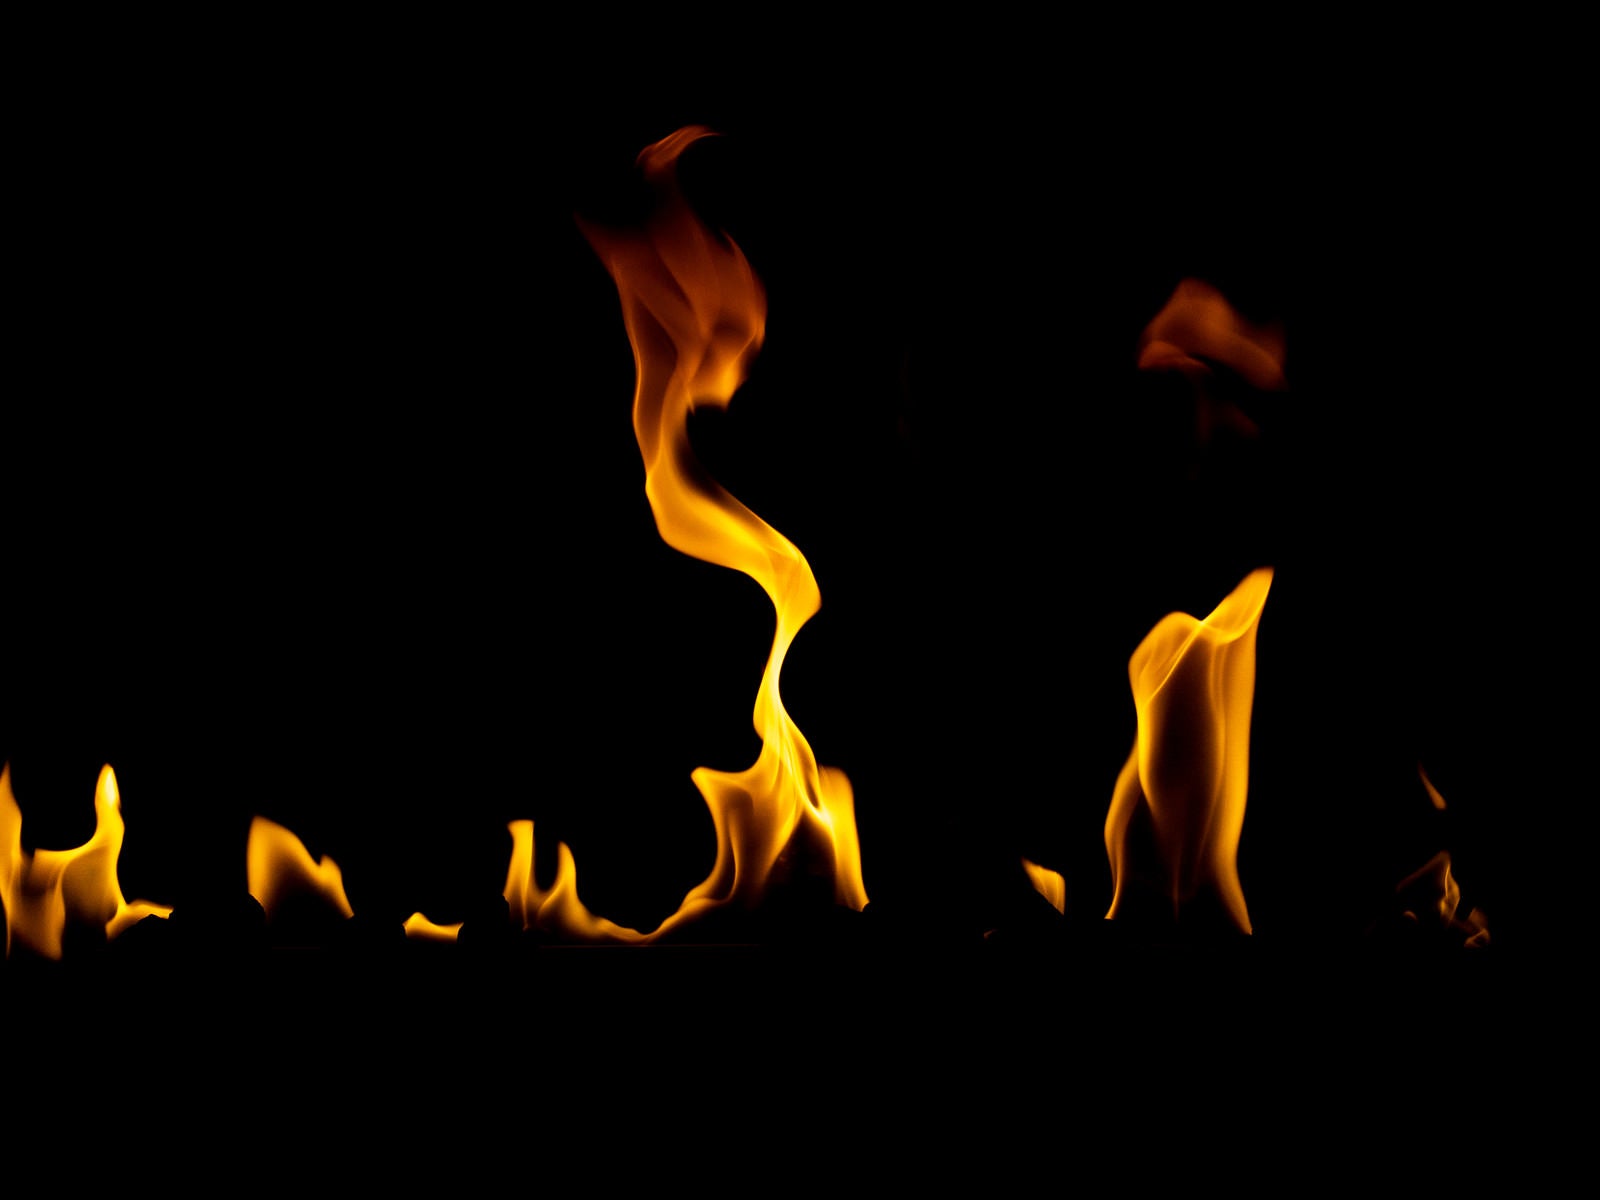 「火が揺れながら燃える様子」の写真